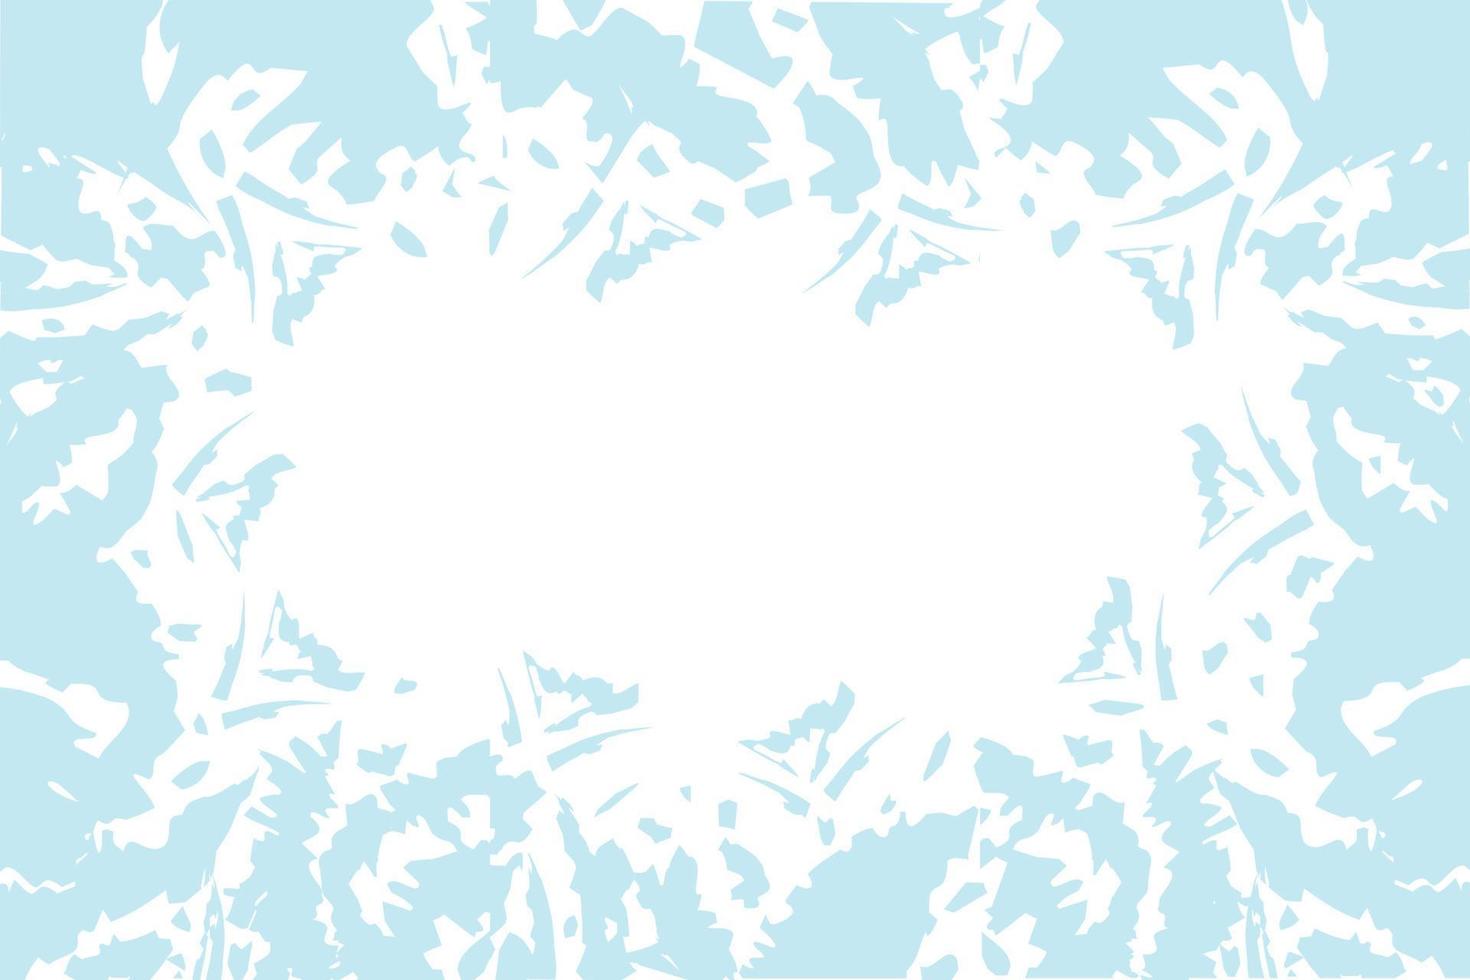 Manchas abigarradas abstractas en tonos azules invernales de moda en forma de acuarela. textura de fondo aislar vector